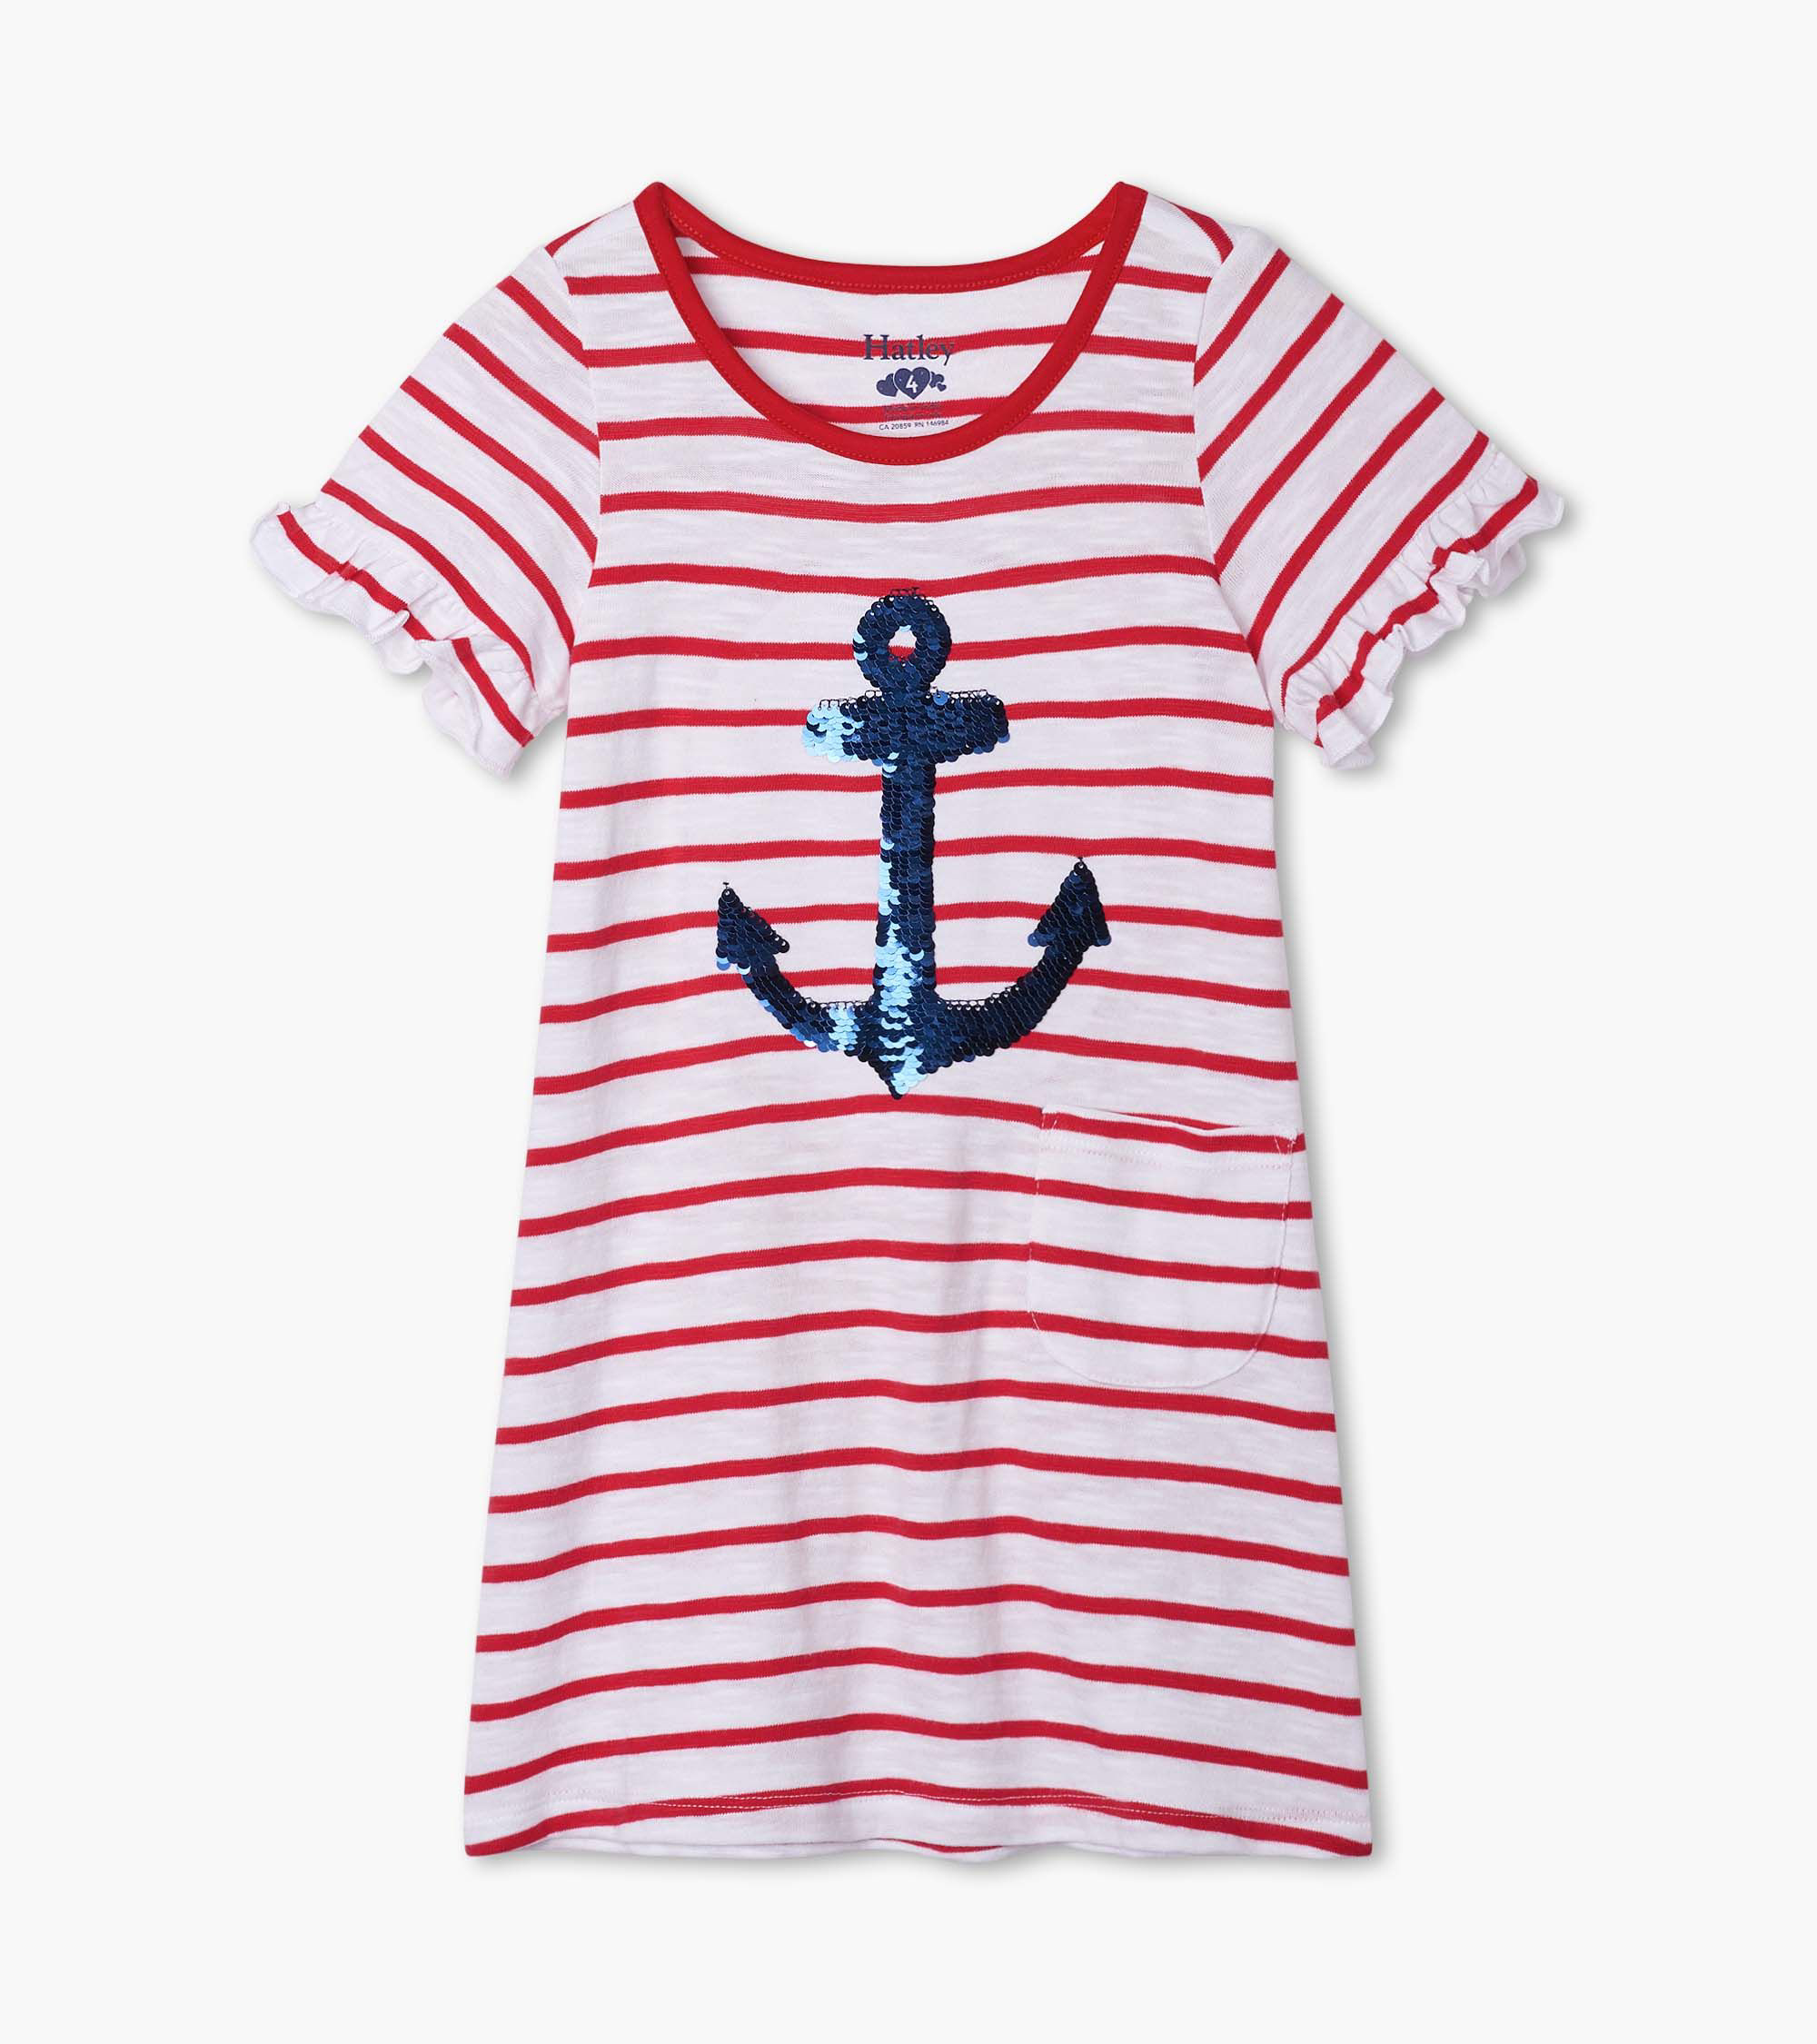 Flip sequin anchor tee shirt dress 1